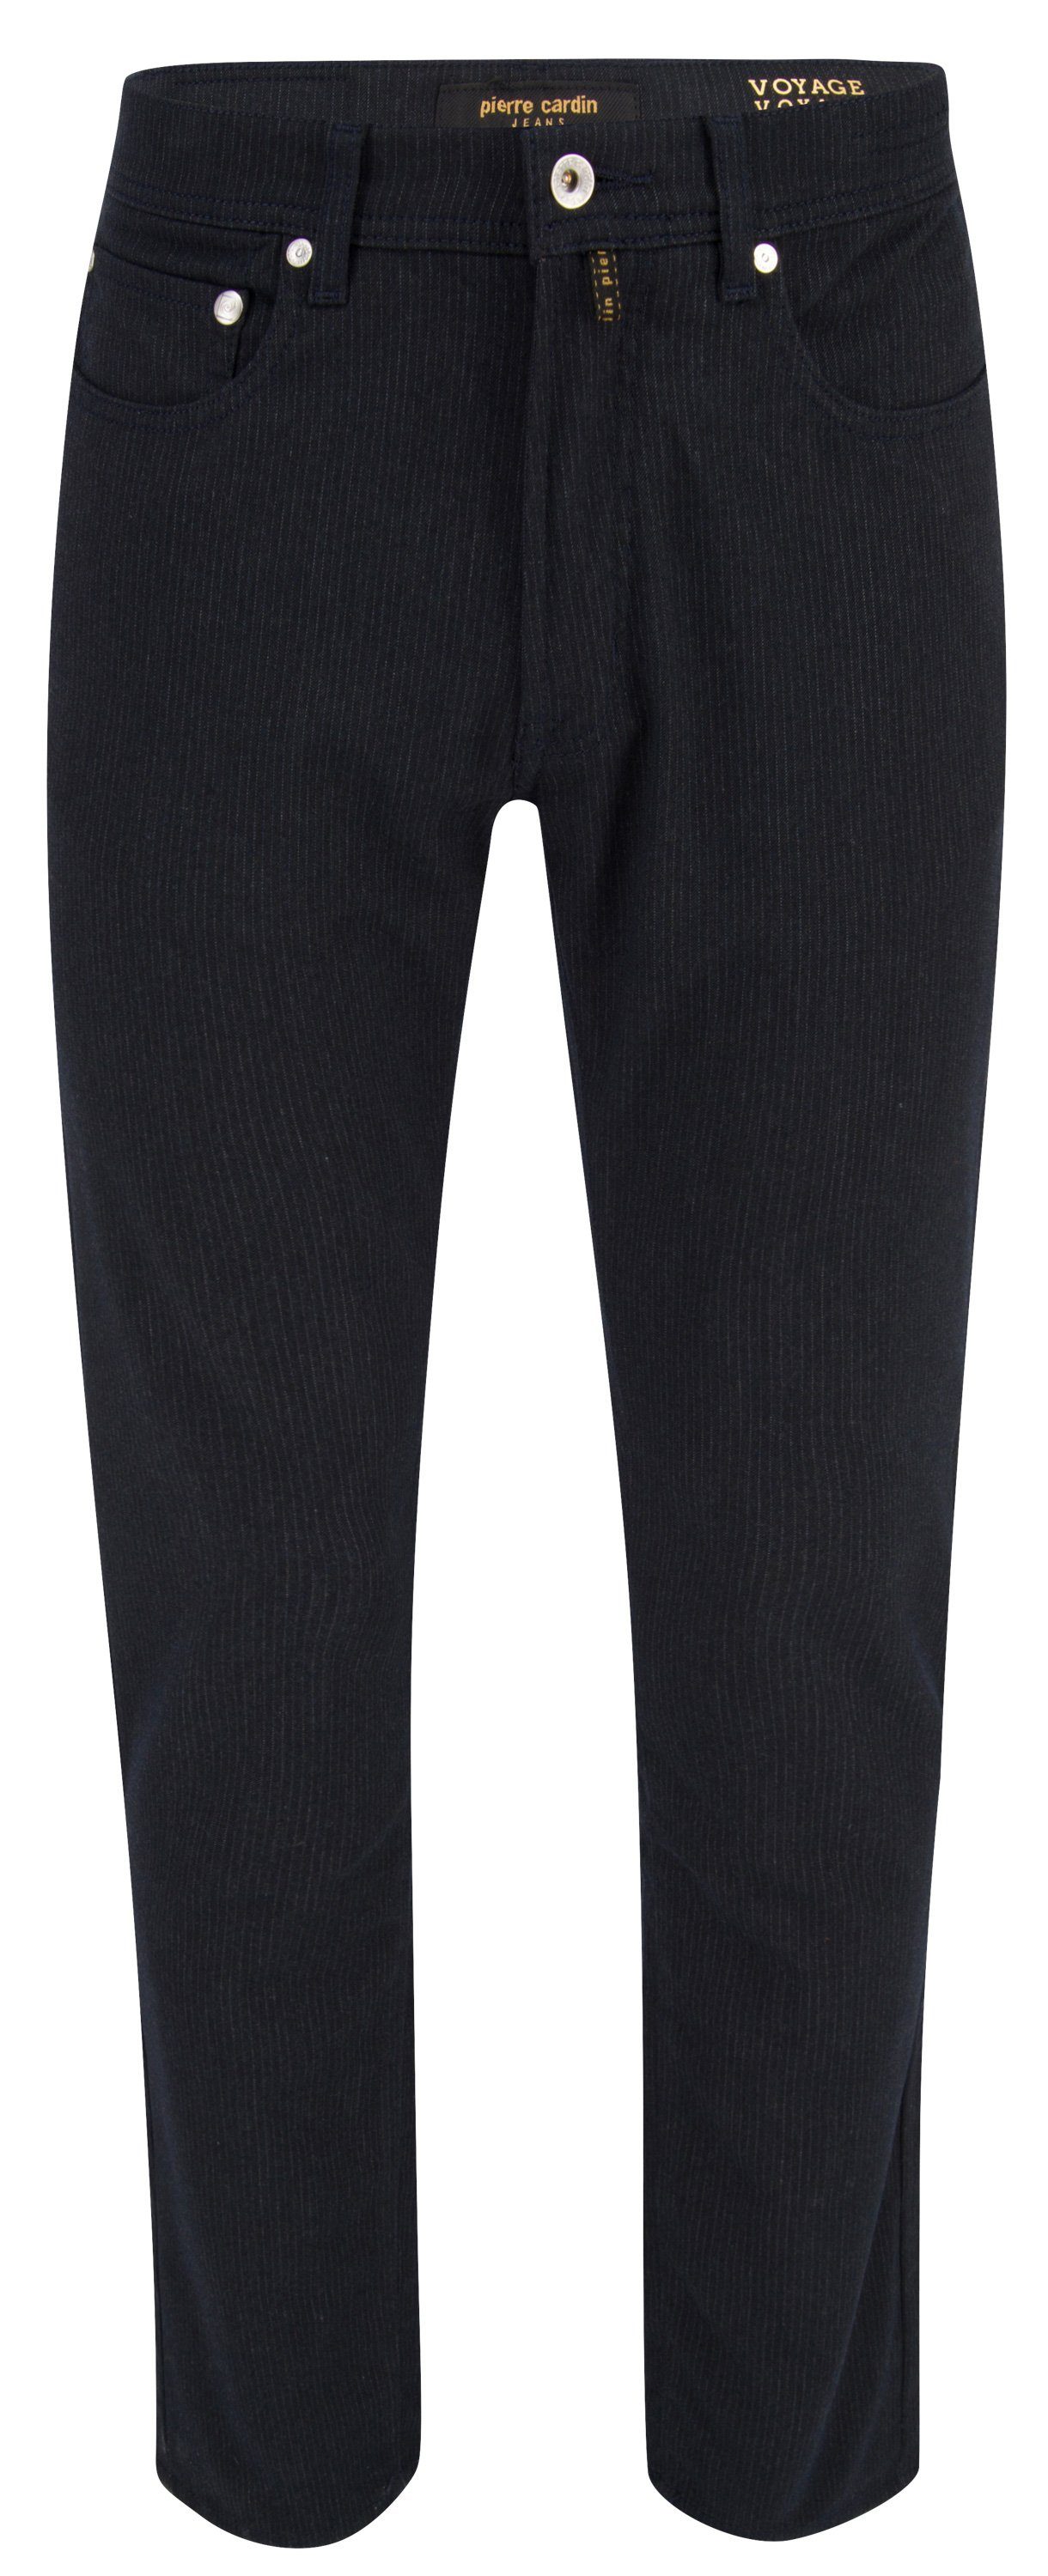 Pierre Cardin 5-Pocket-Jeans PIERRE - dark 4795.68 LYON grey stripes VOYAGE 30917 chalk CARDIN